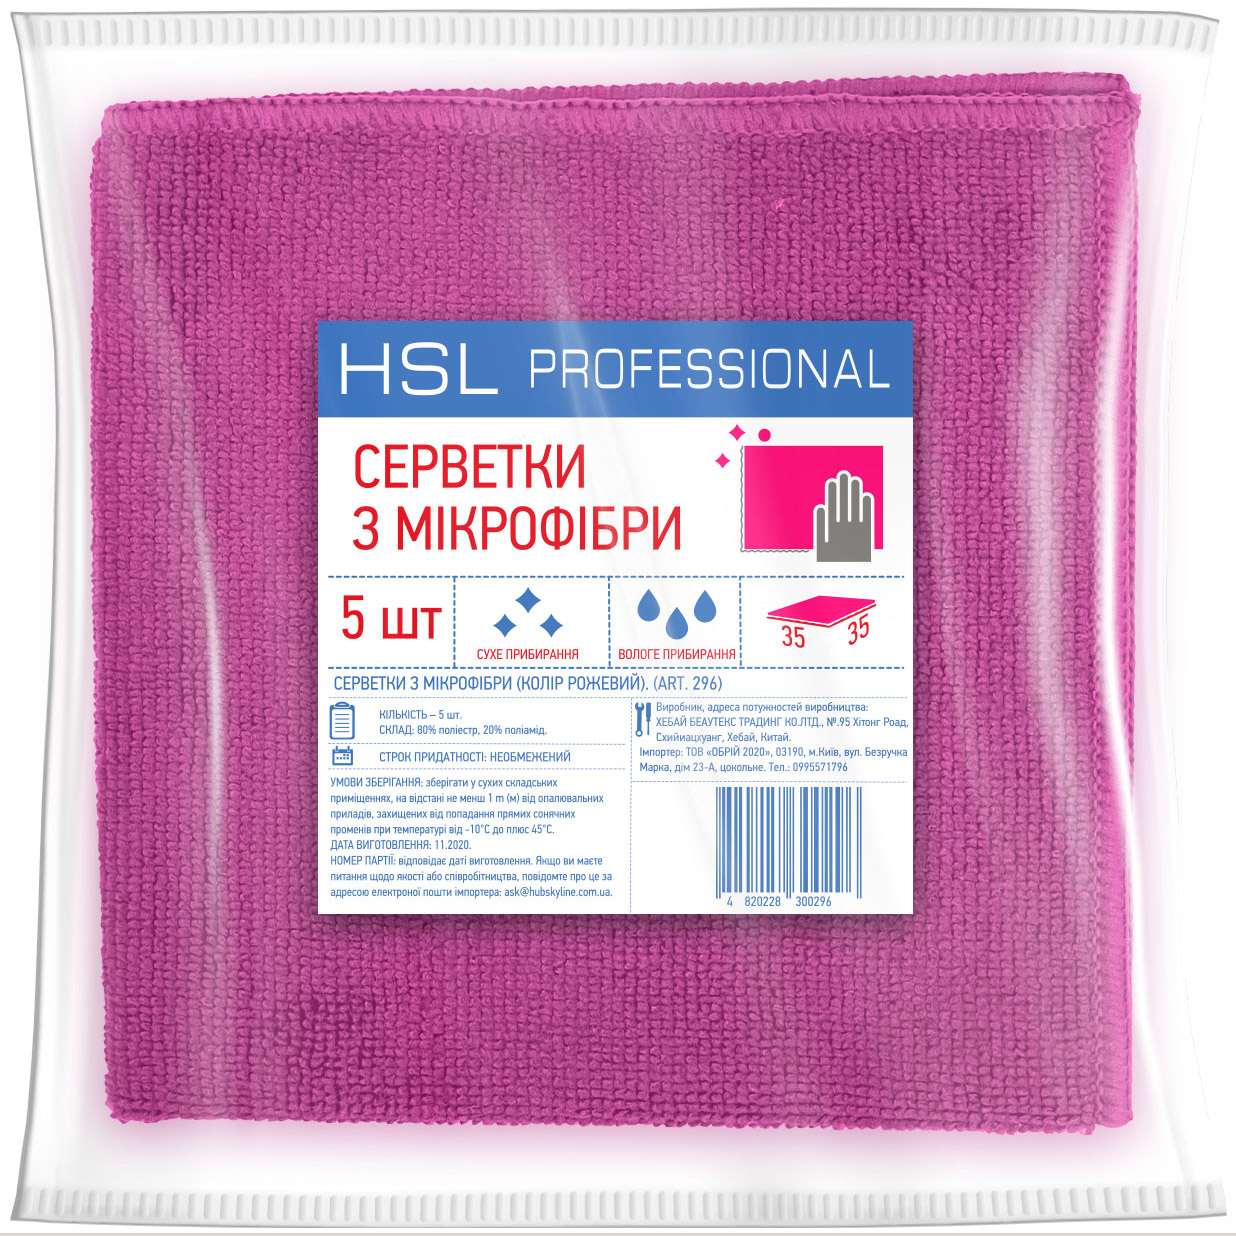 Серветки універсальні з мікрофібри HSL Professional рожеві 35x35 5 шт - фото 1